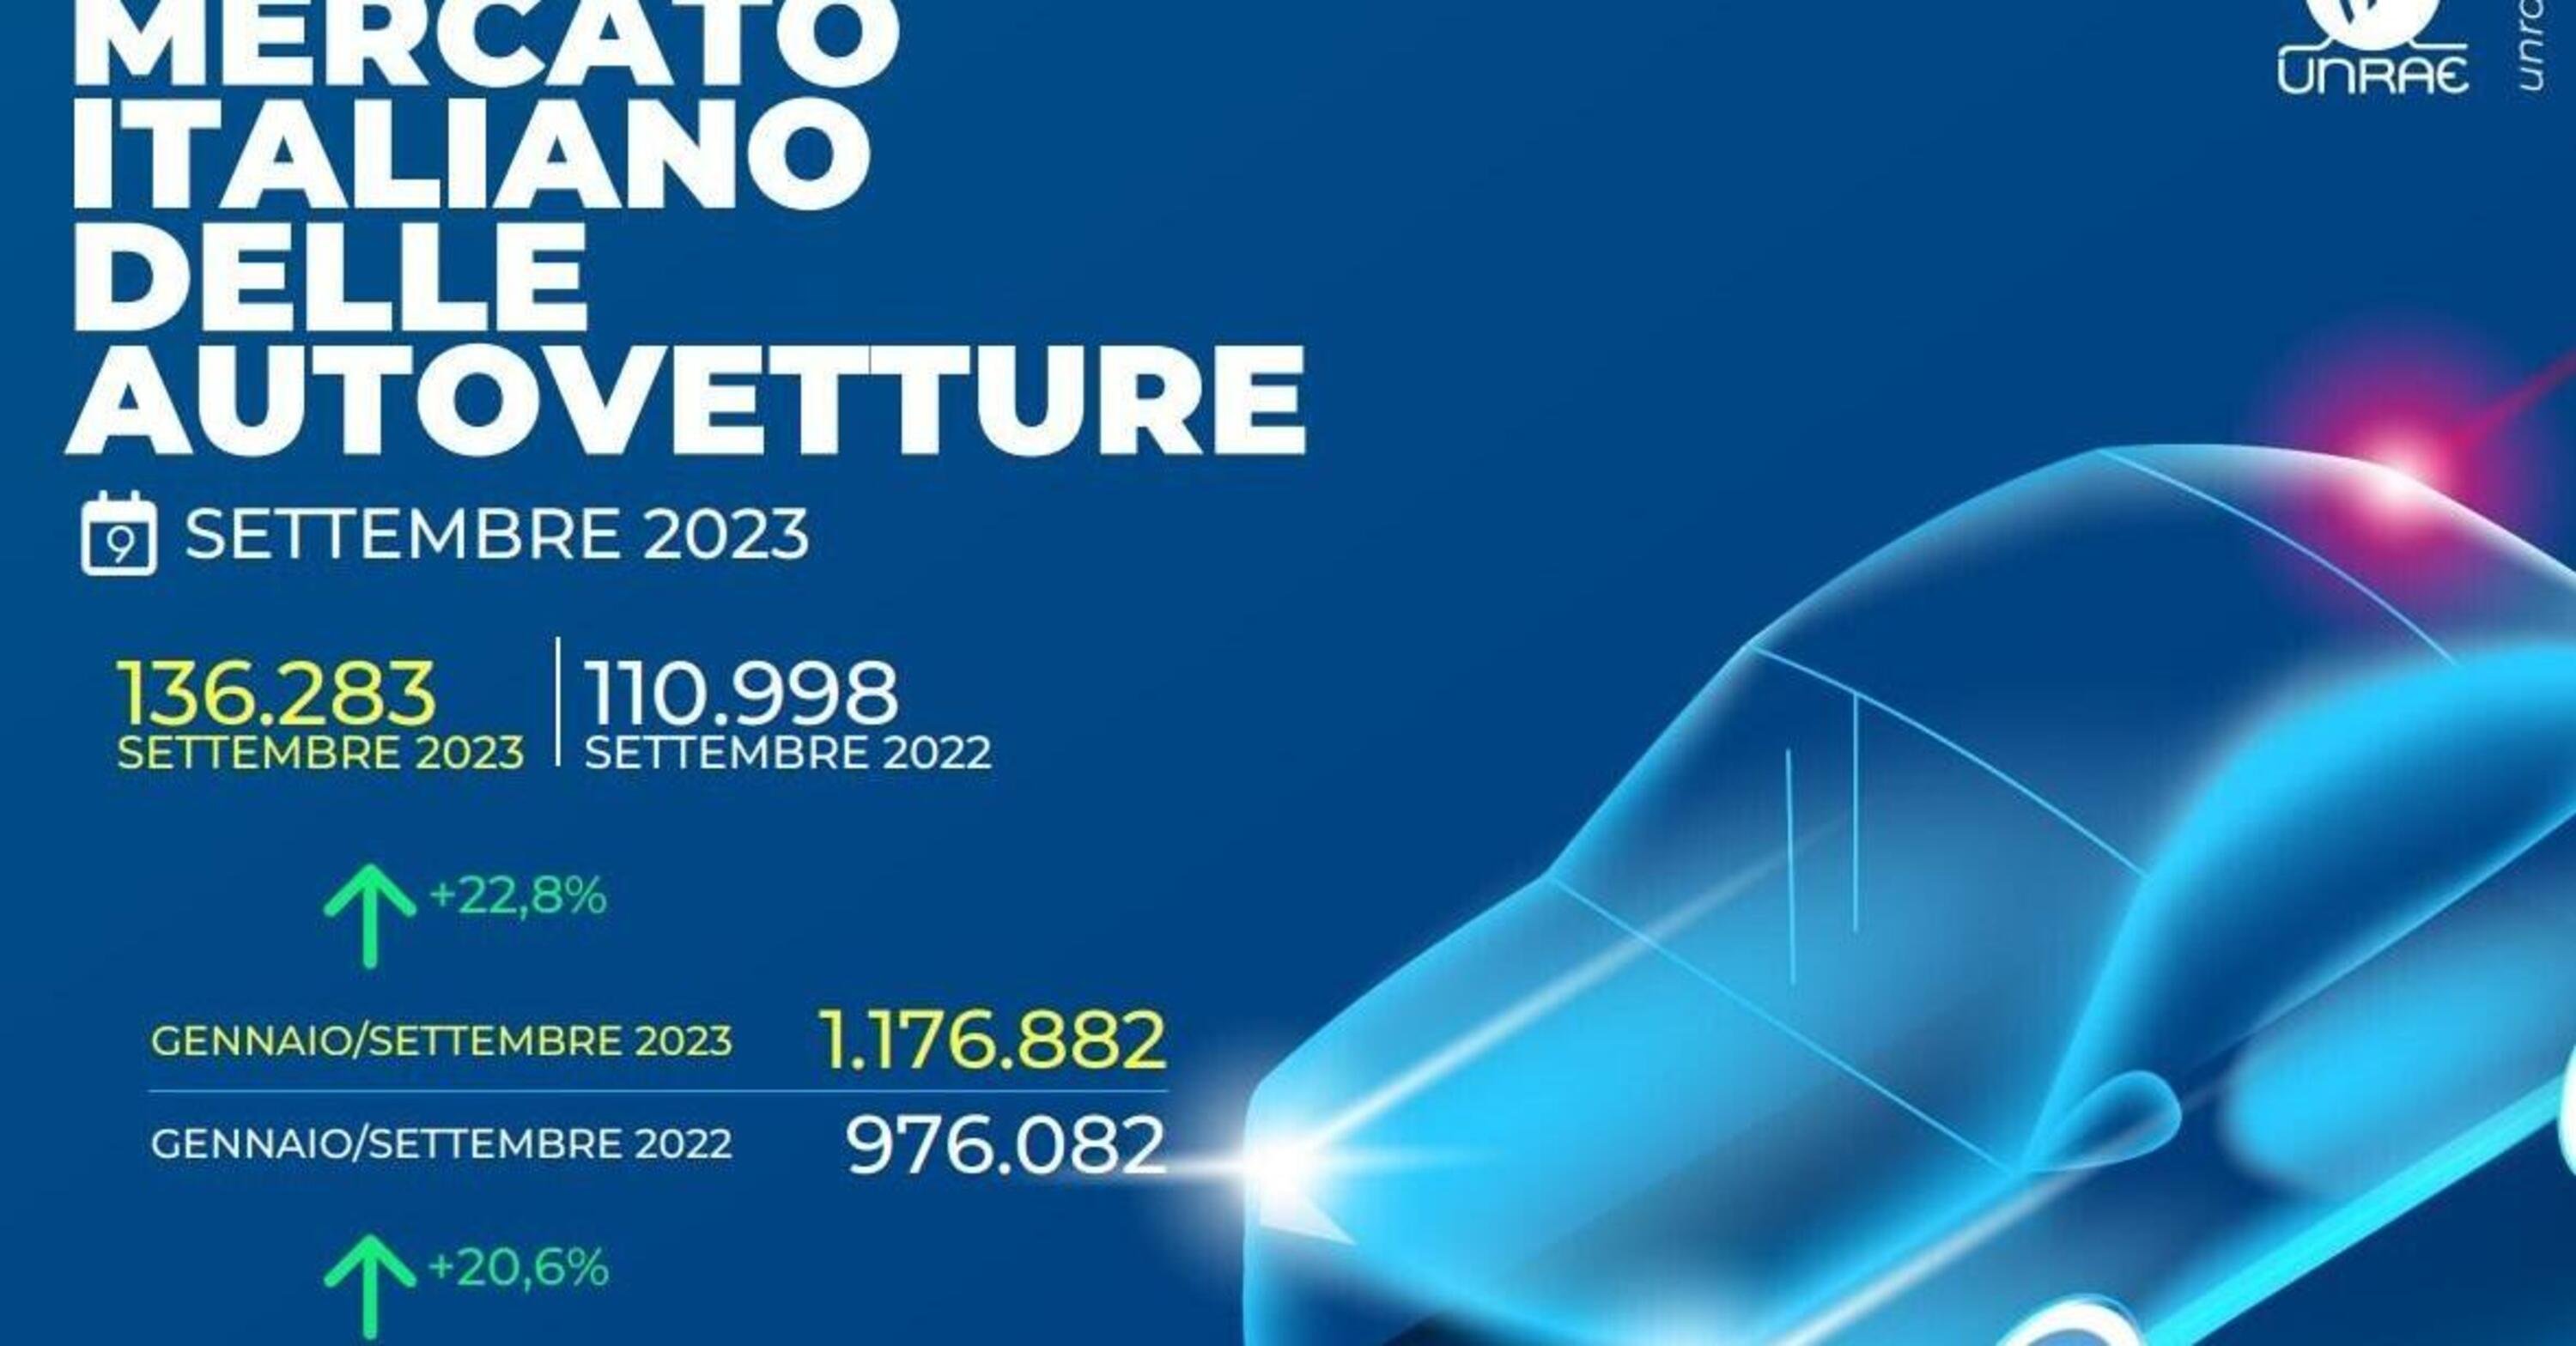 Mercato Italia a settembre 2023: crescita del 22,8%